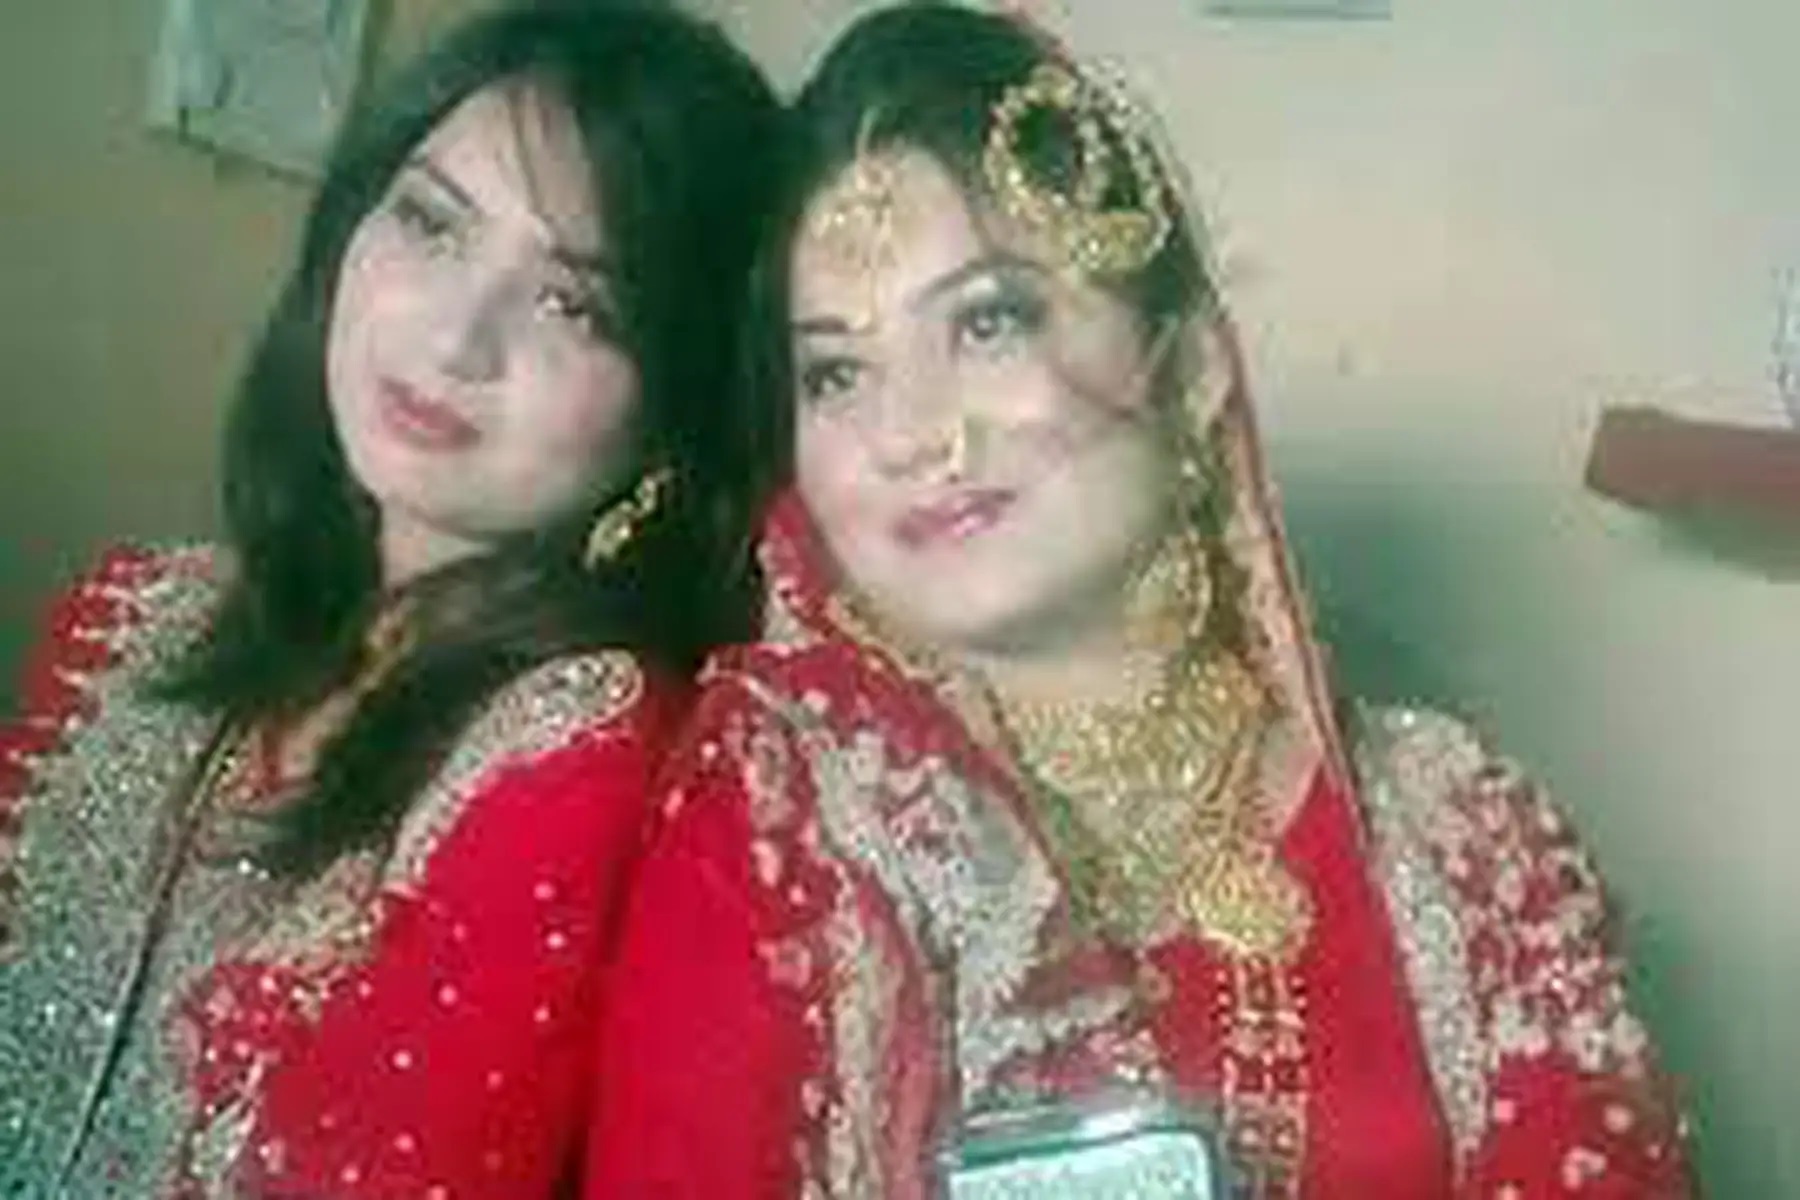 Crimen de honor en Pakistán: asesinan a dos hermanas que vivían en España por negarse a un matrimonio forzoso